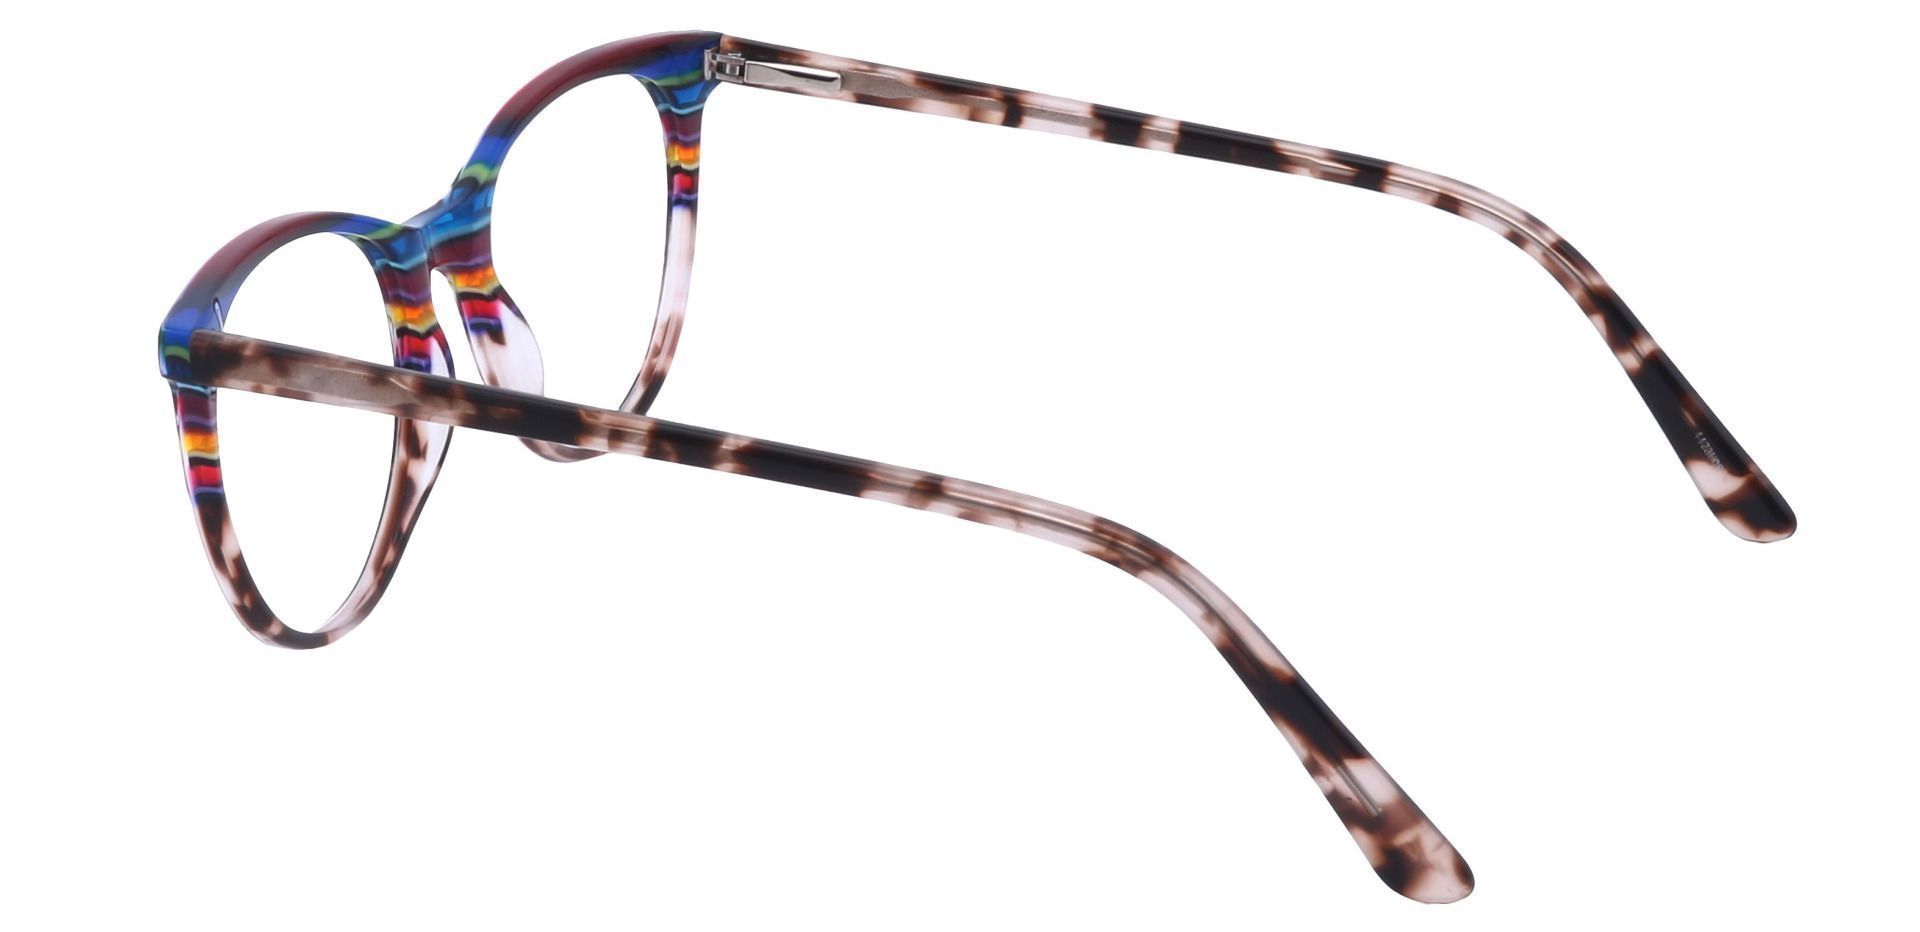 Patagonia Oval Progressive Glasses - Multi Colored Stripes